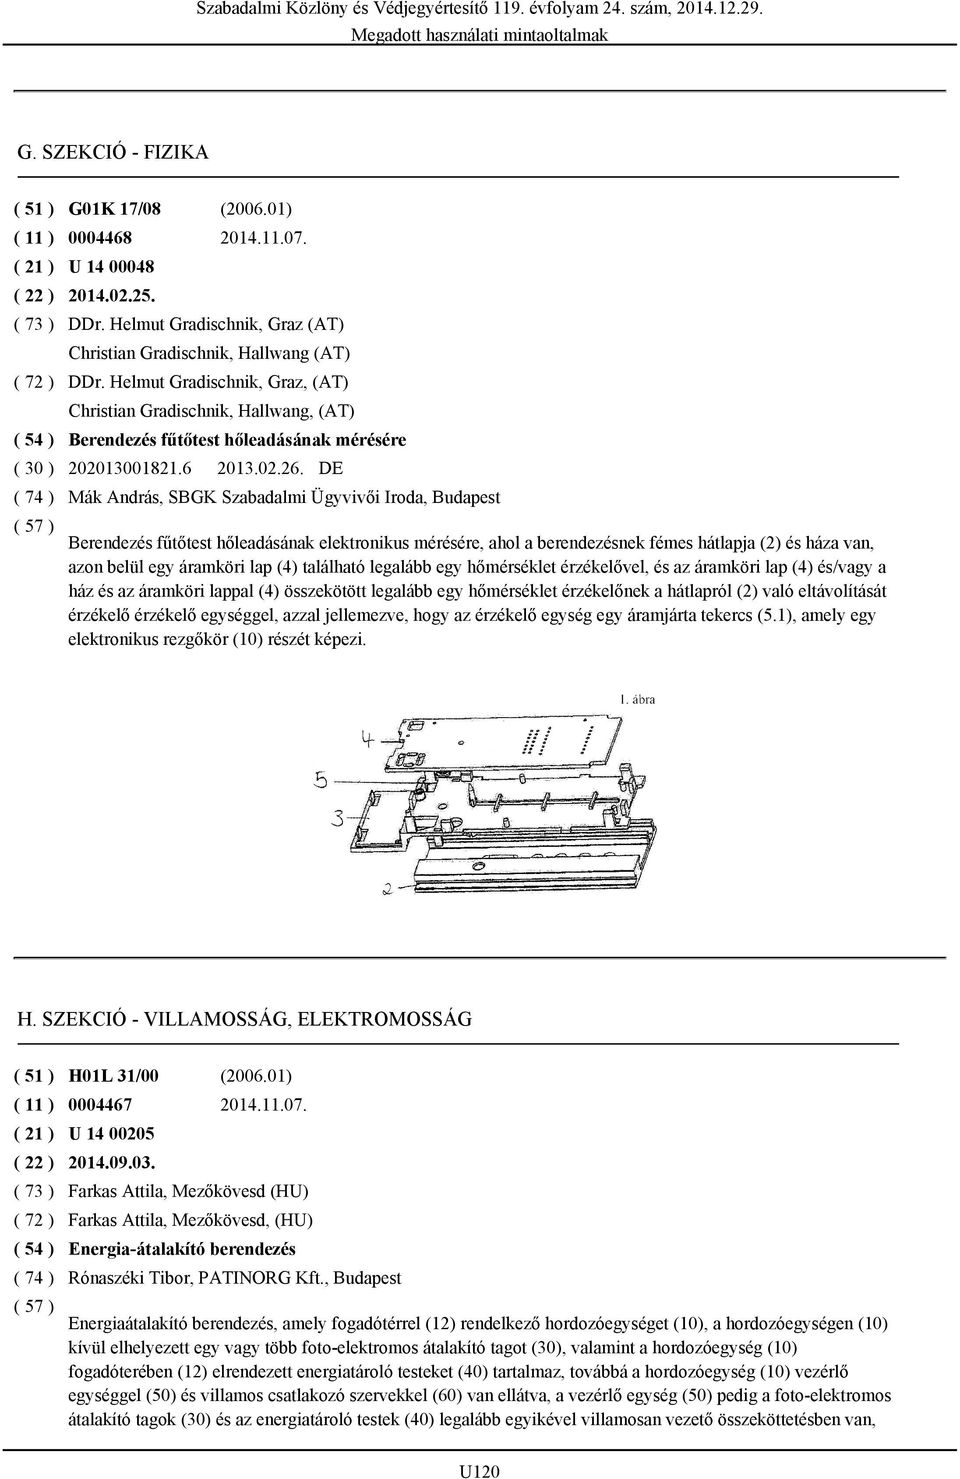 DE Mák András, SBGK Szabadalmi Ügyvivői Iroda, Budapest Berendezés fűtőtest hőleadásának elektronikus mérésére, ahol a berendezésnek fémes hátlapja (2) és háza van, azon belül egy áramköri lap (4)